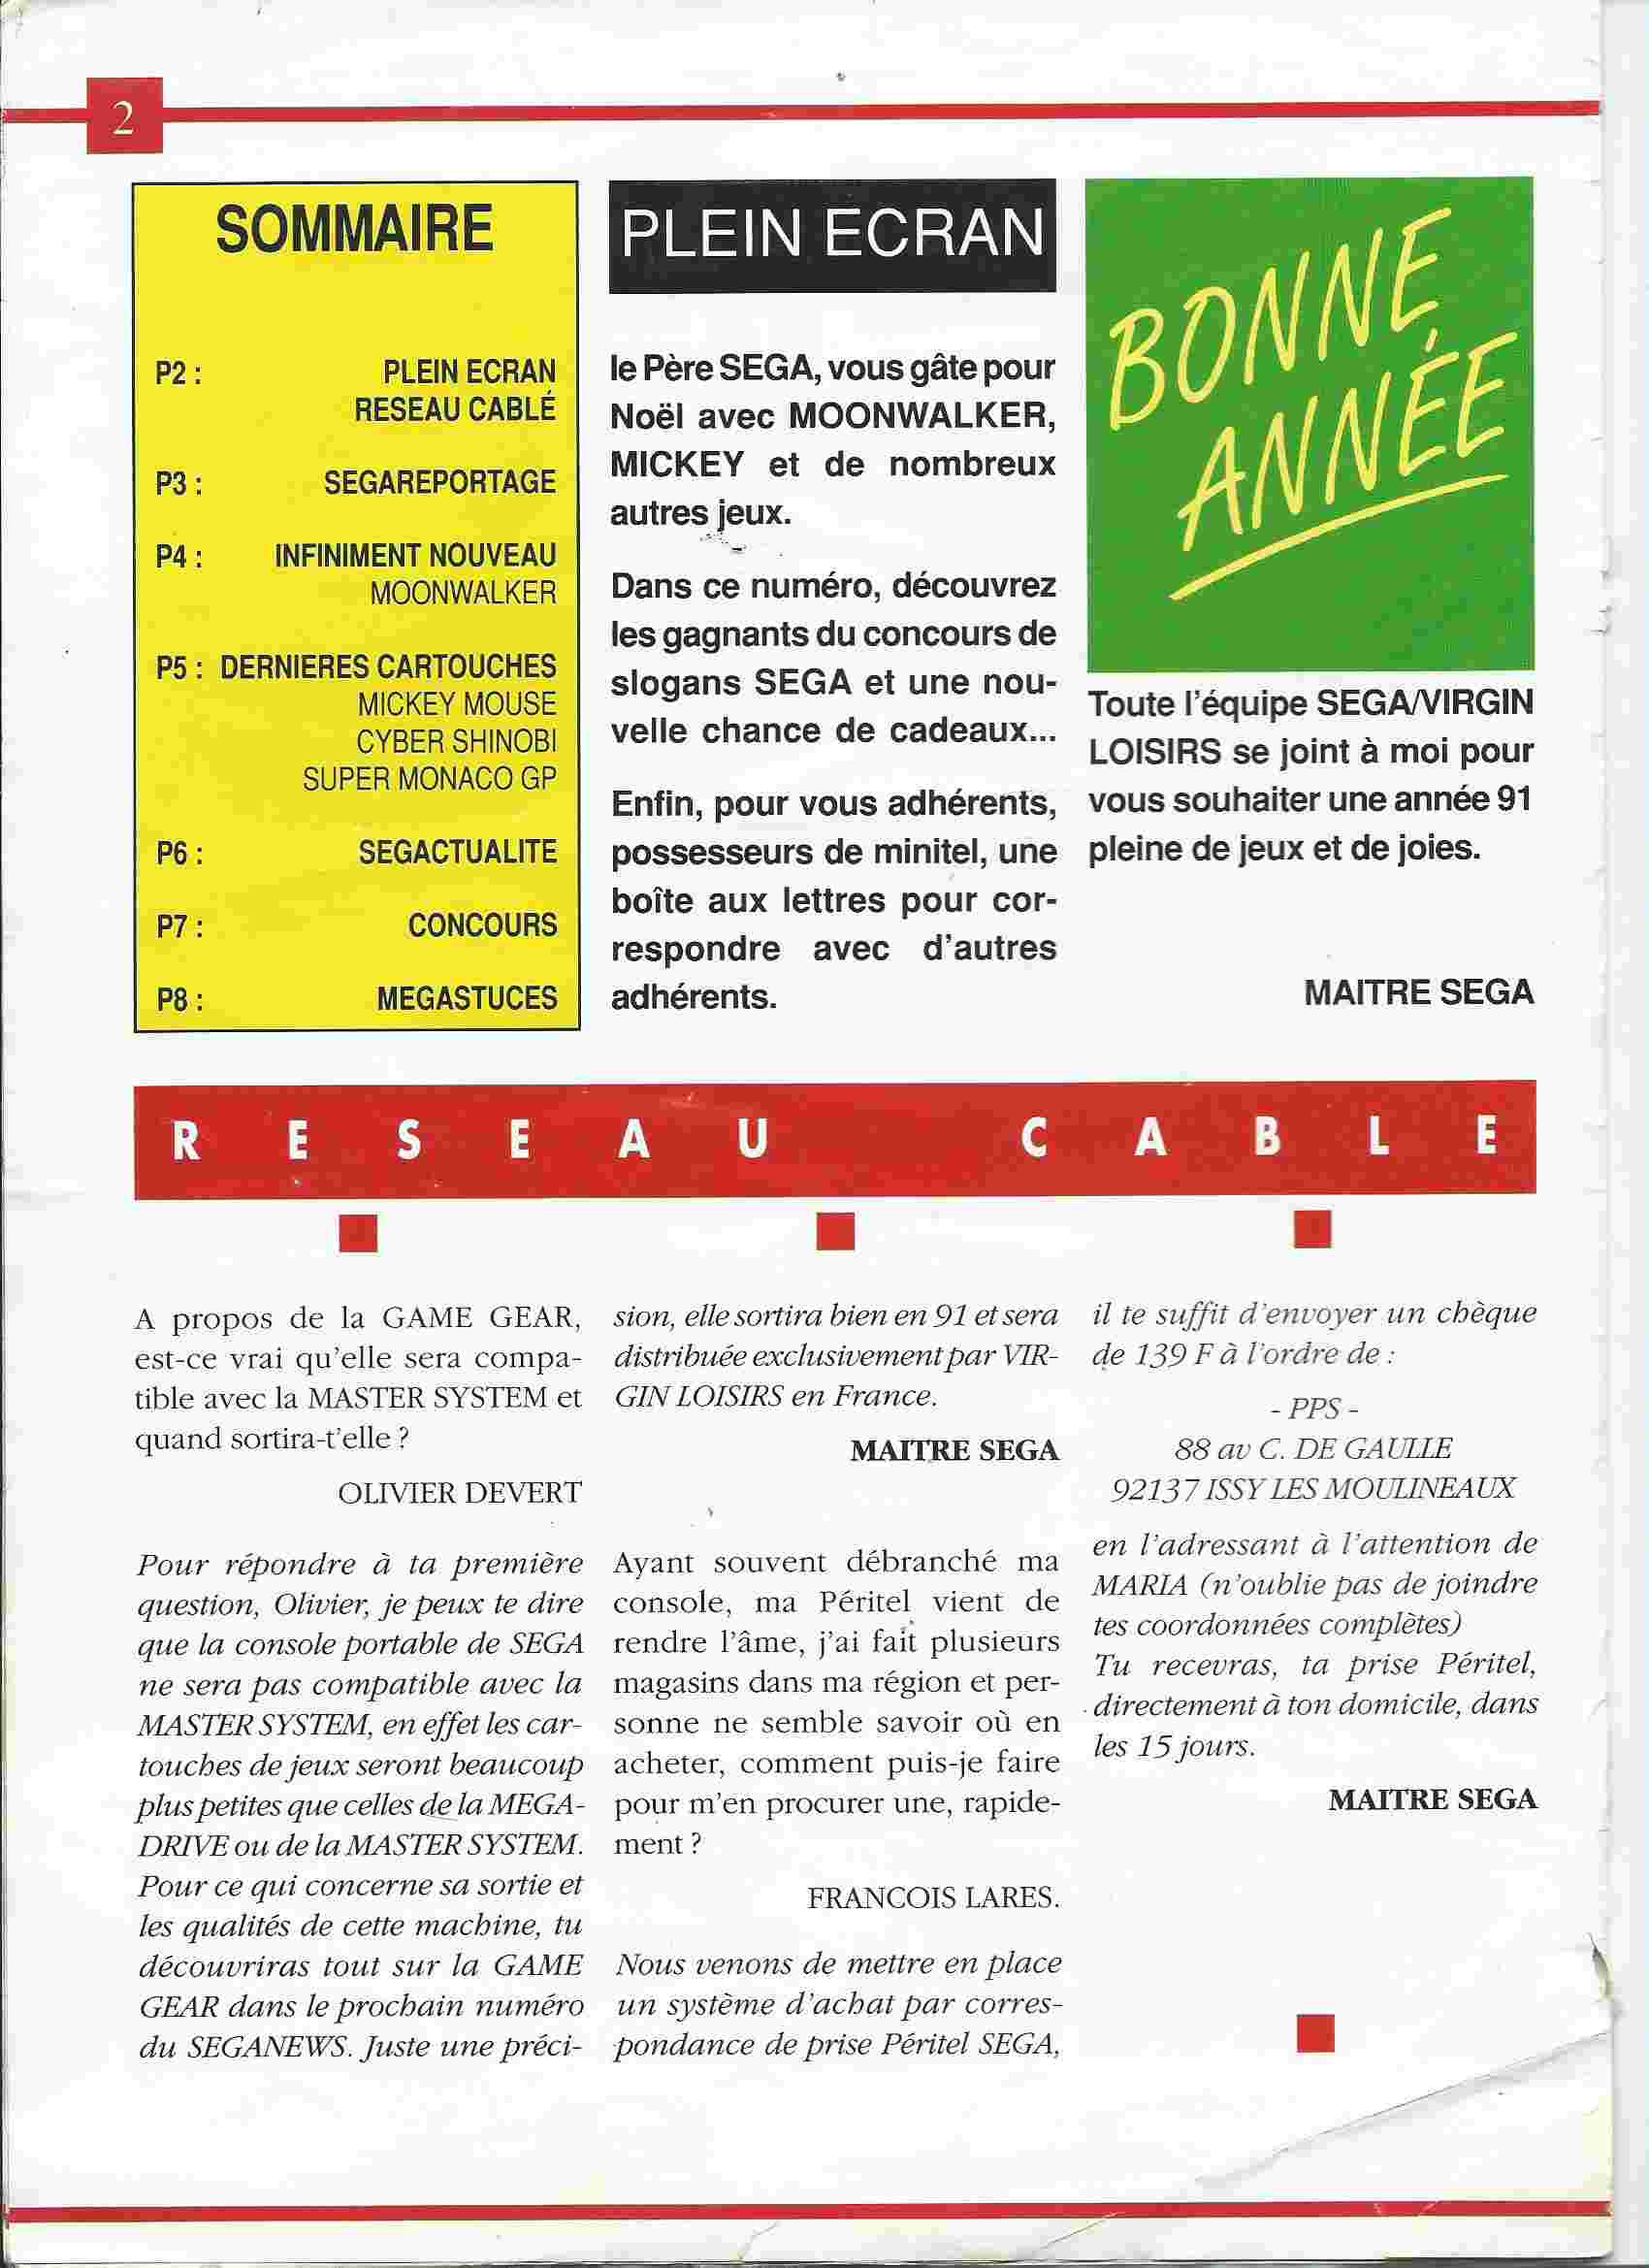 Magazine "Sega News" 01010